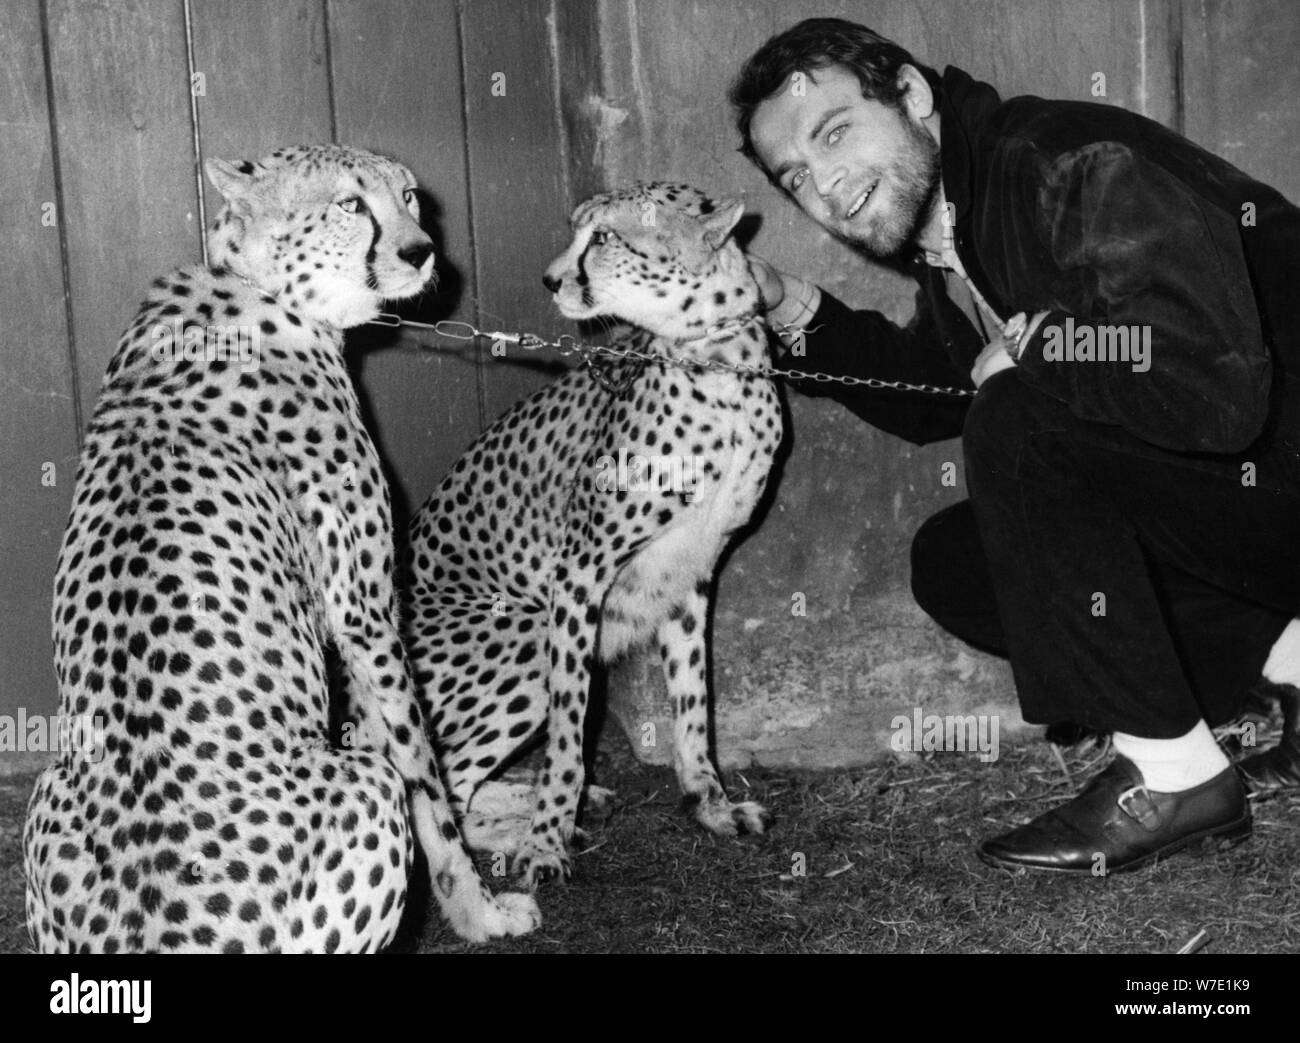 El actor italiano y estrella de cine Mario Girotti en el parque zoológico Hellabrunn, en Munich, Alemania, 1967. Artista: Desconocido Foto de stock